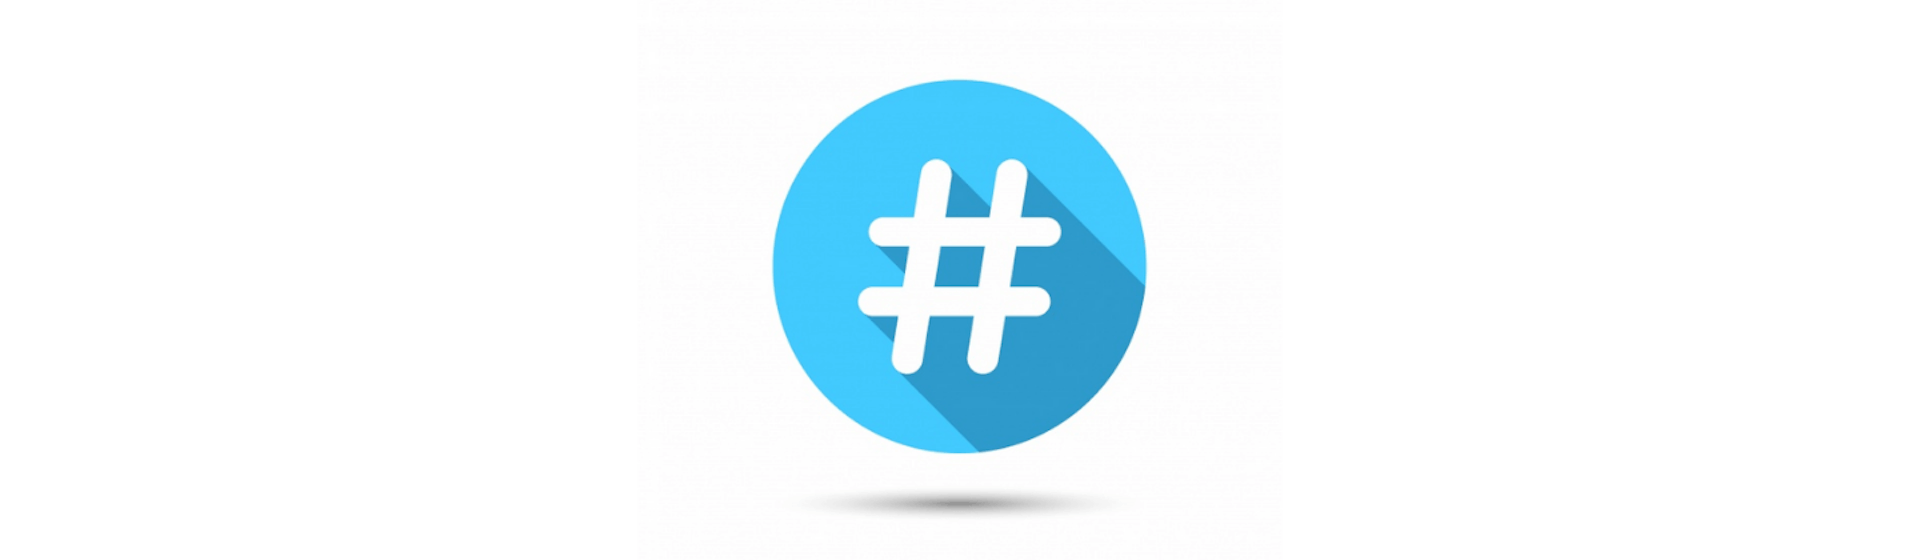 ¿Cómo elegir los hashtags en Instagram? Guía completa para que tu marca sea tendencia